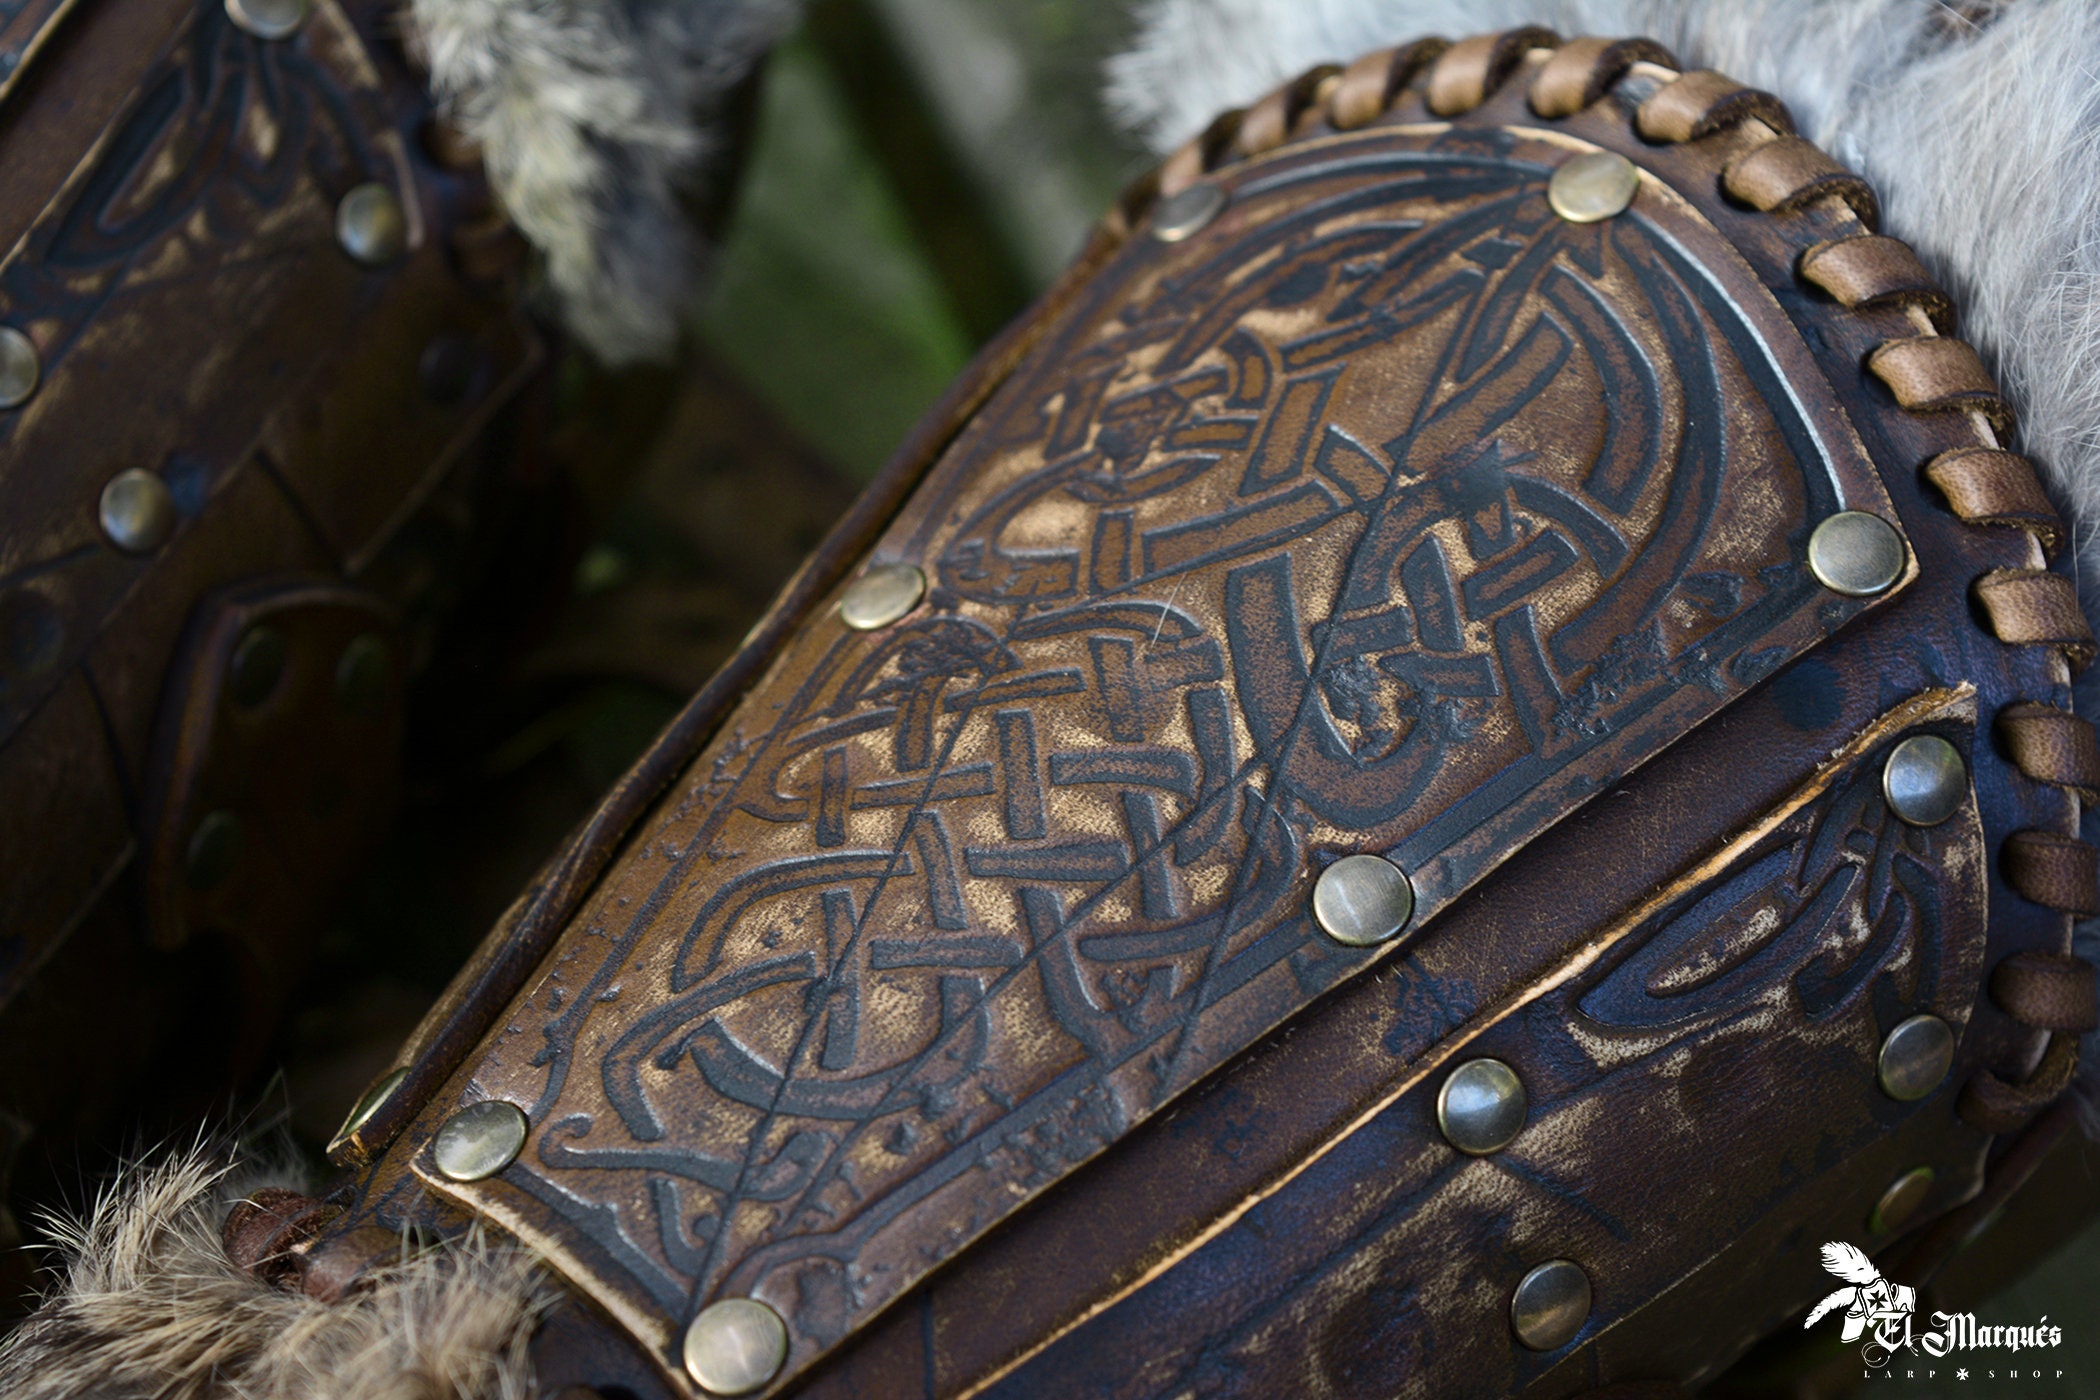 Acessórios para fantasias de Vikings  Encontre os complementos perfeitos  para sua fantasia de viking